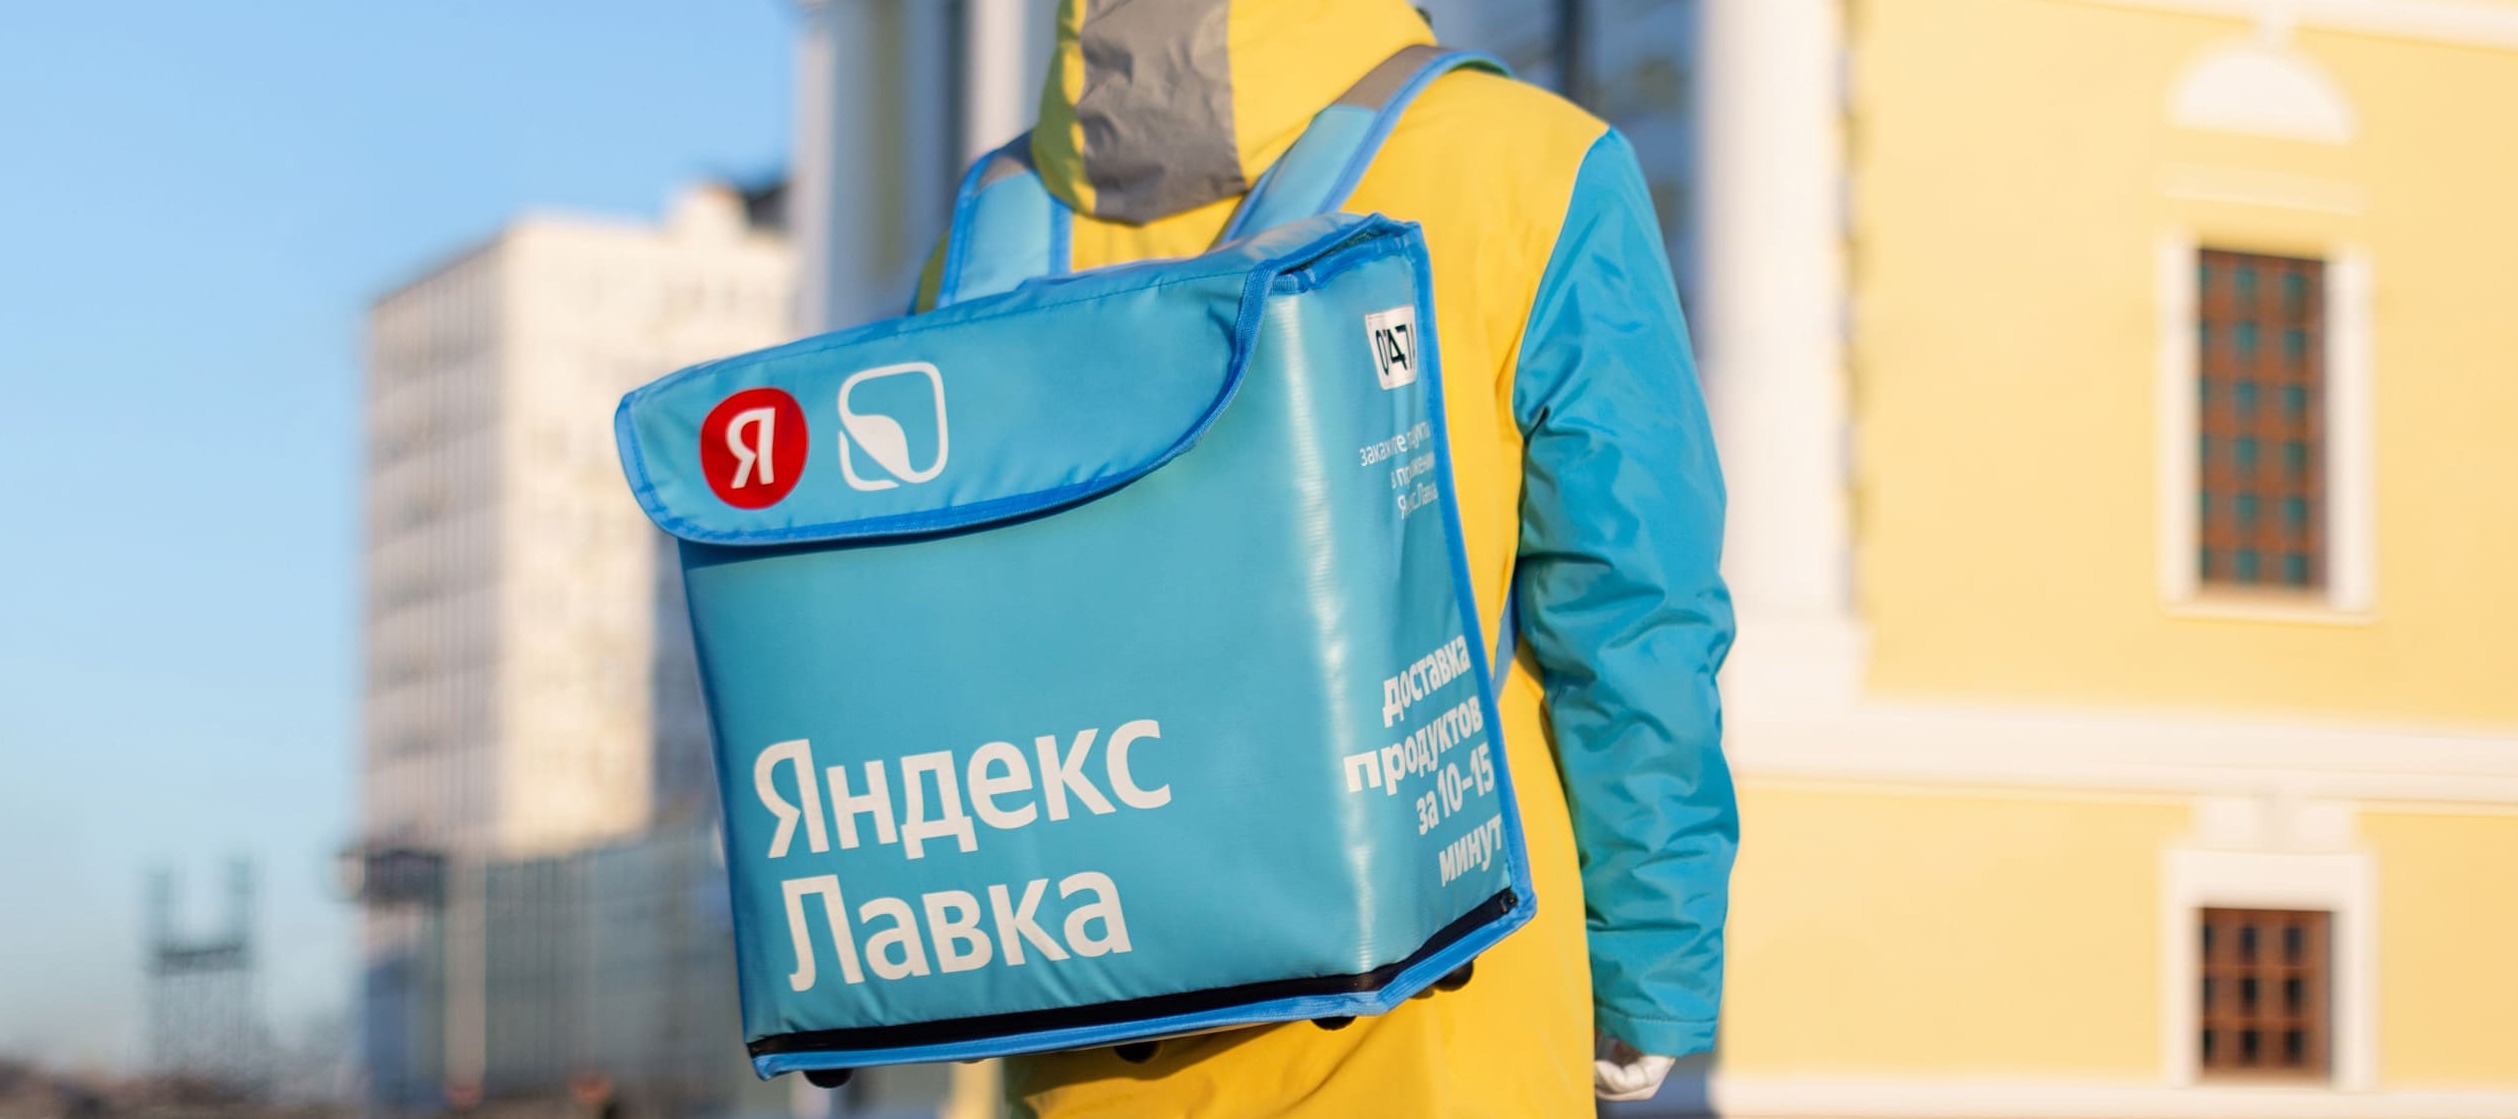 Спор за «Лавку»: правообладатель бренда «В лавке» подал иск к «Яндексу»